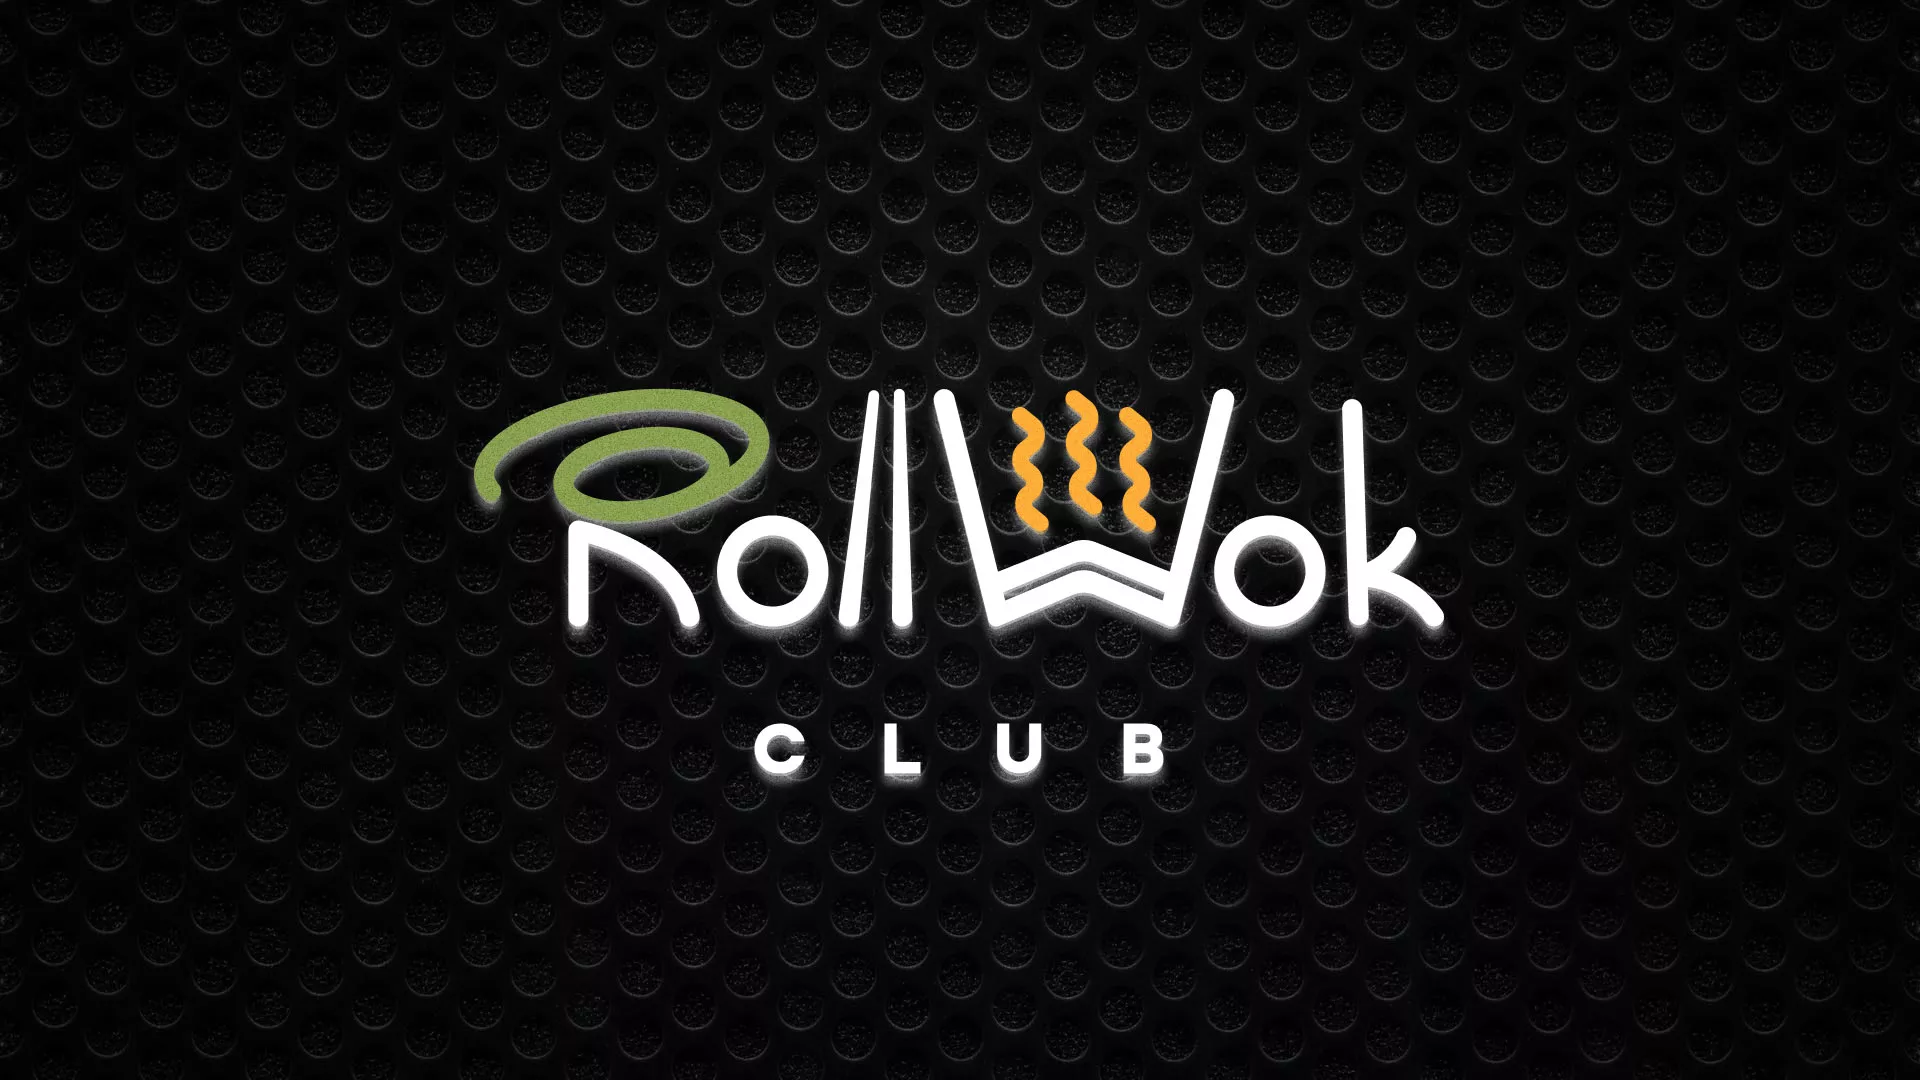 Брендирование торговых точек суши-бара «Roll Wok Club» в Мамадыше